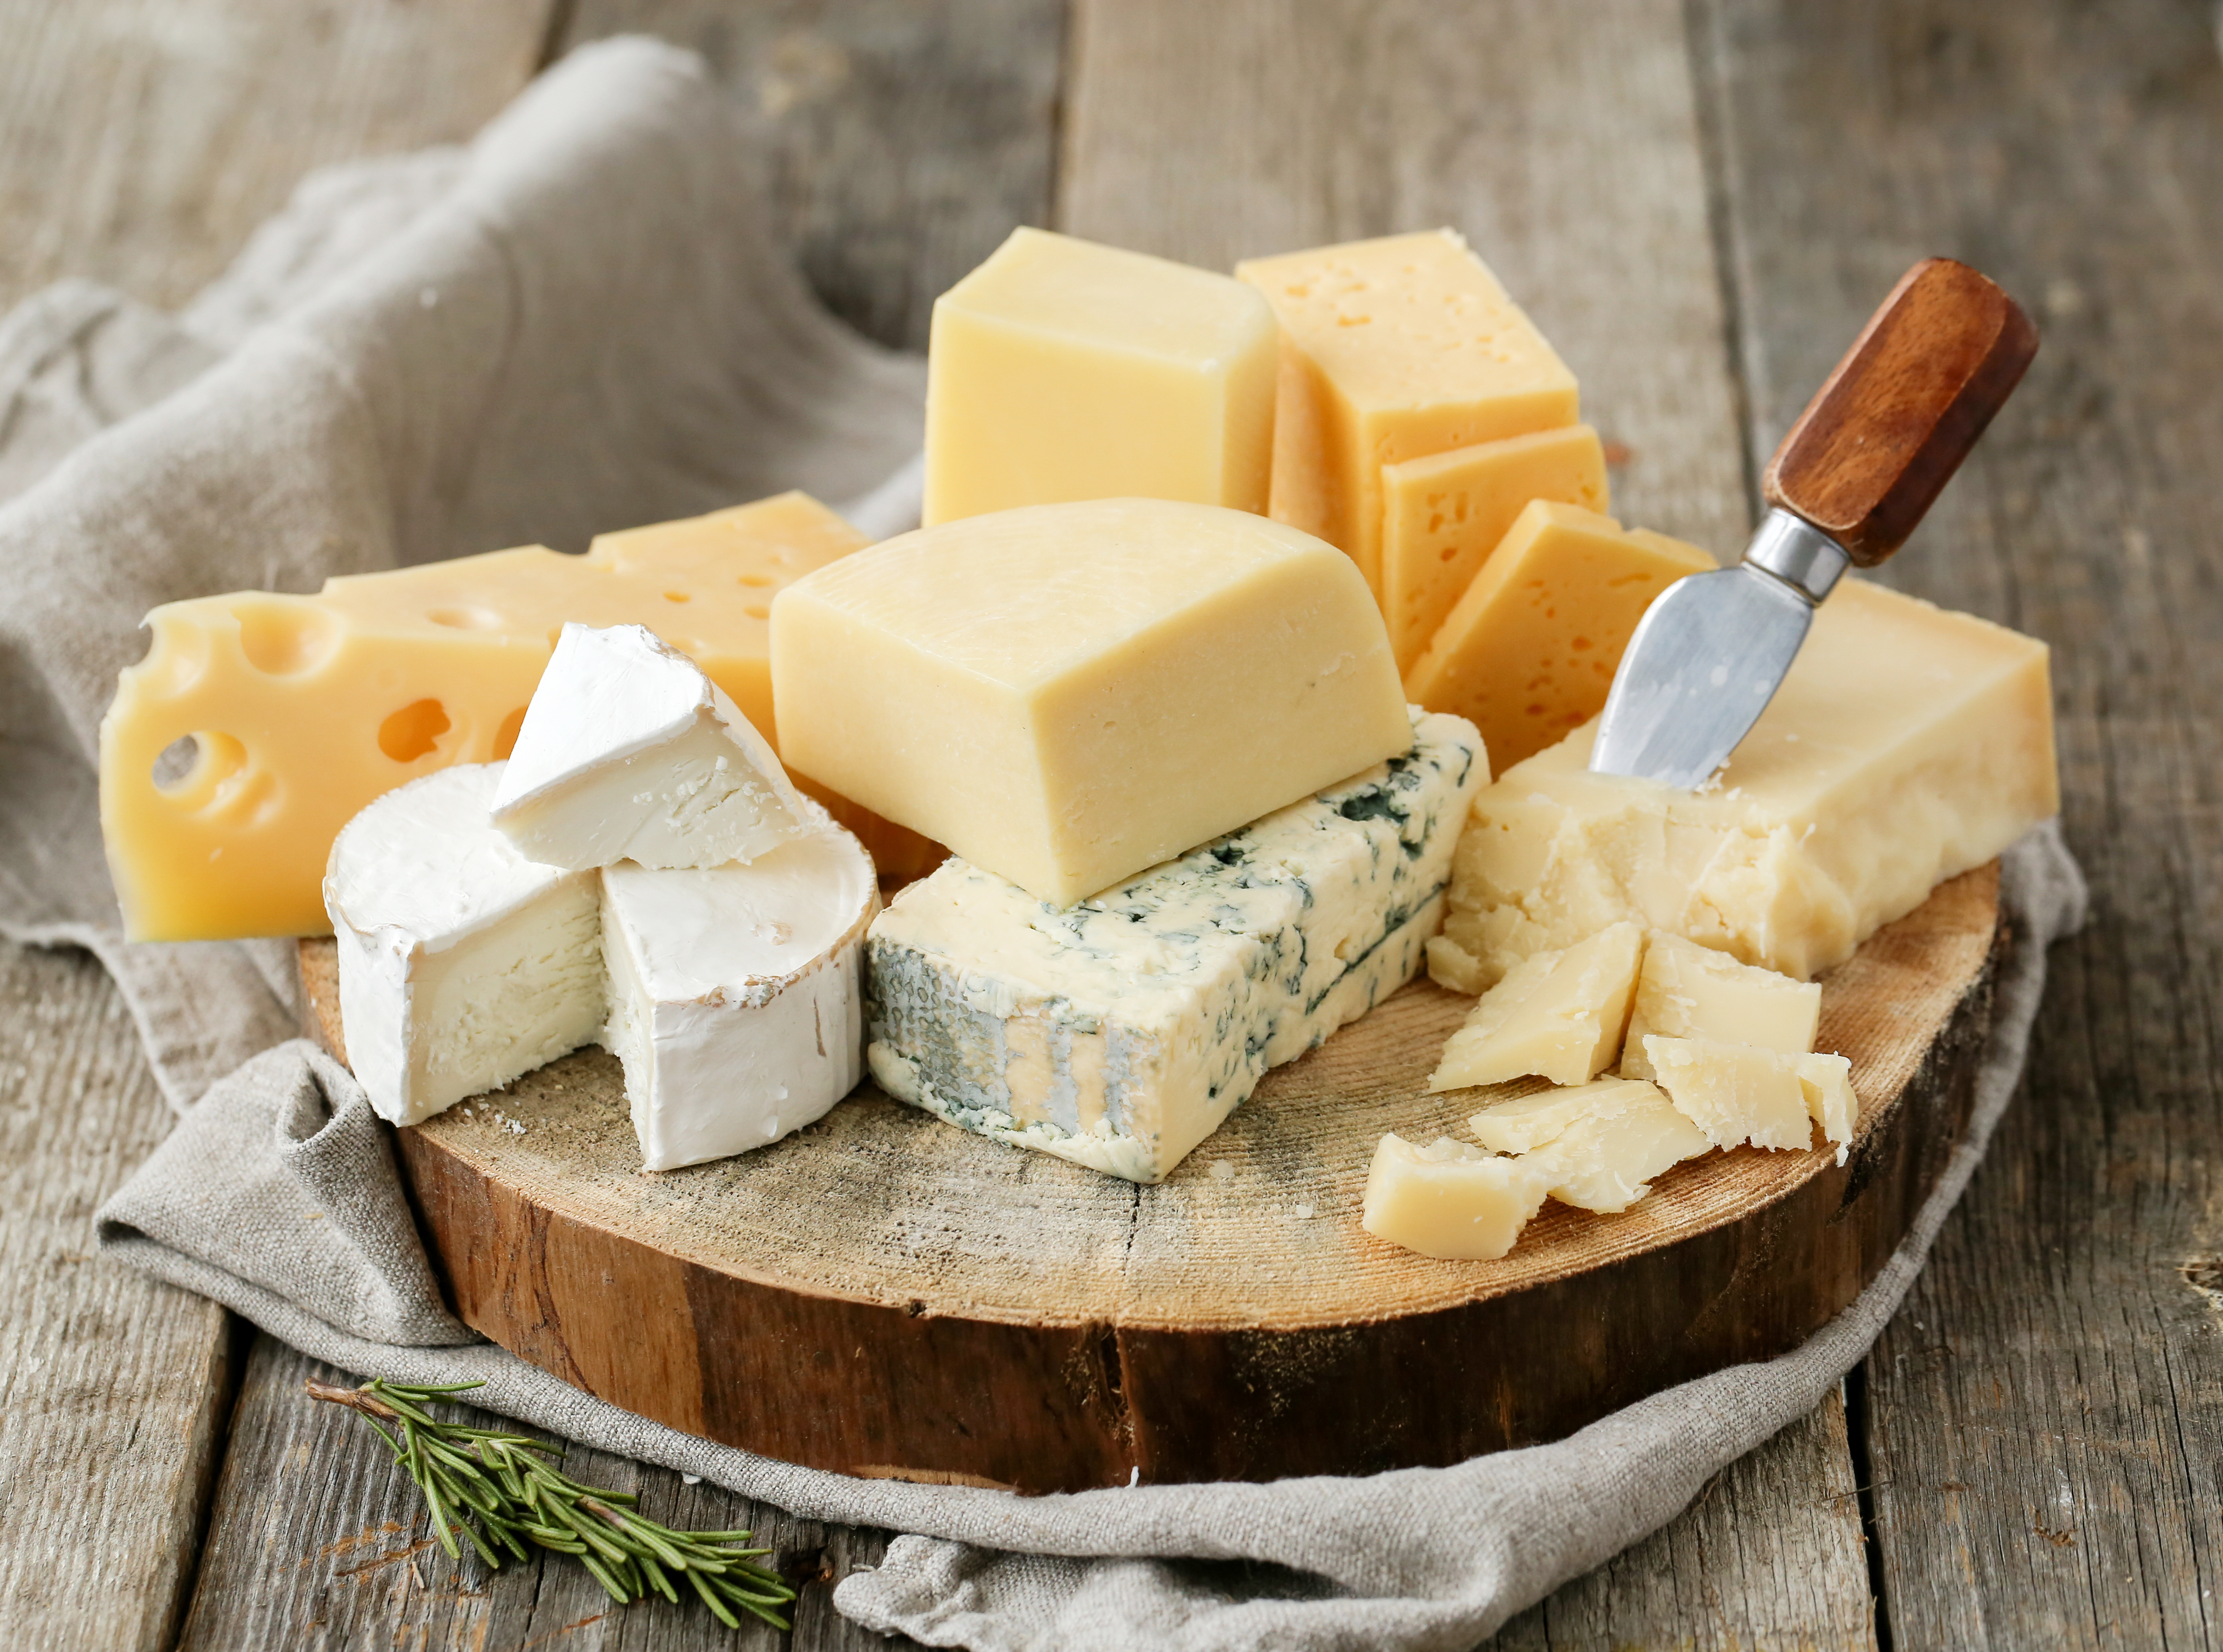 O consumo de queijo especificamente teve um impacto positivo de 3,67% na autoavaliação de saúde